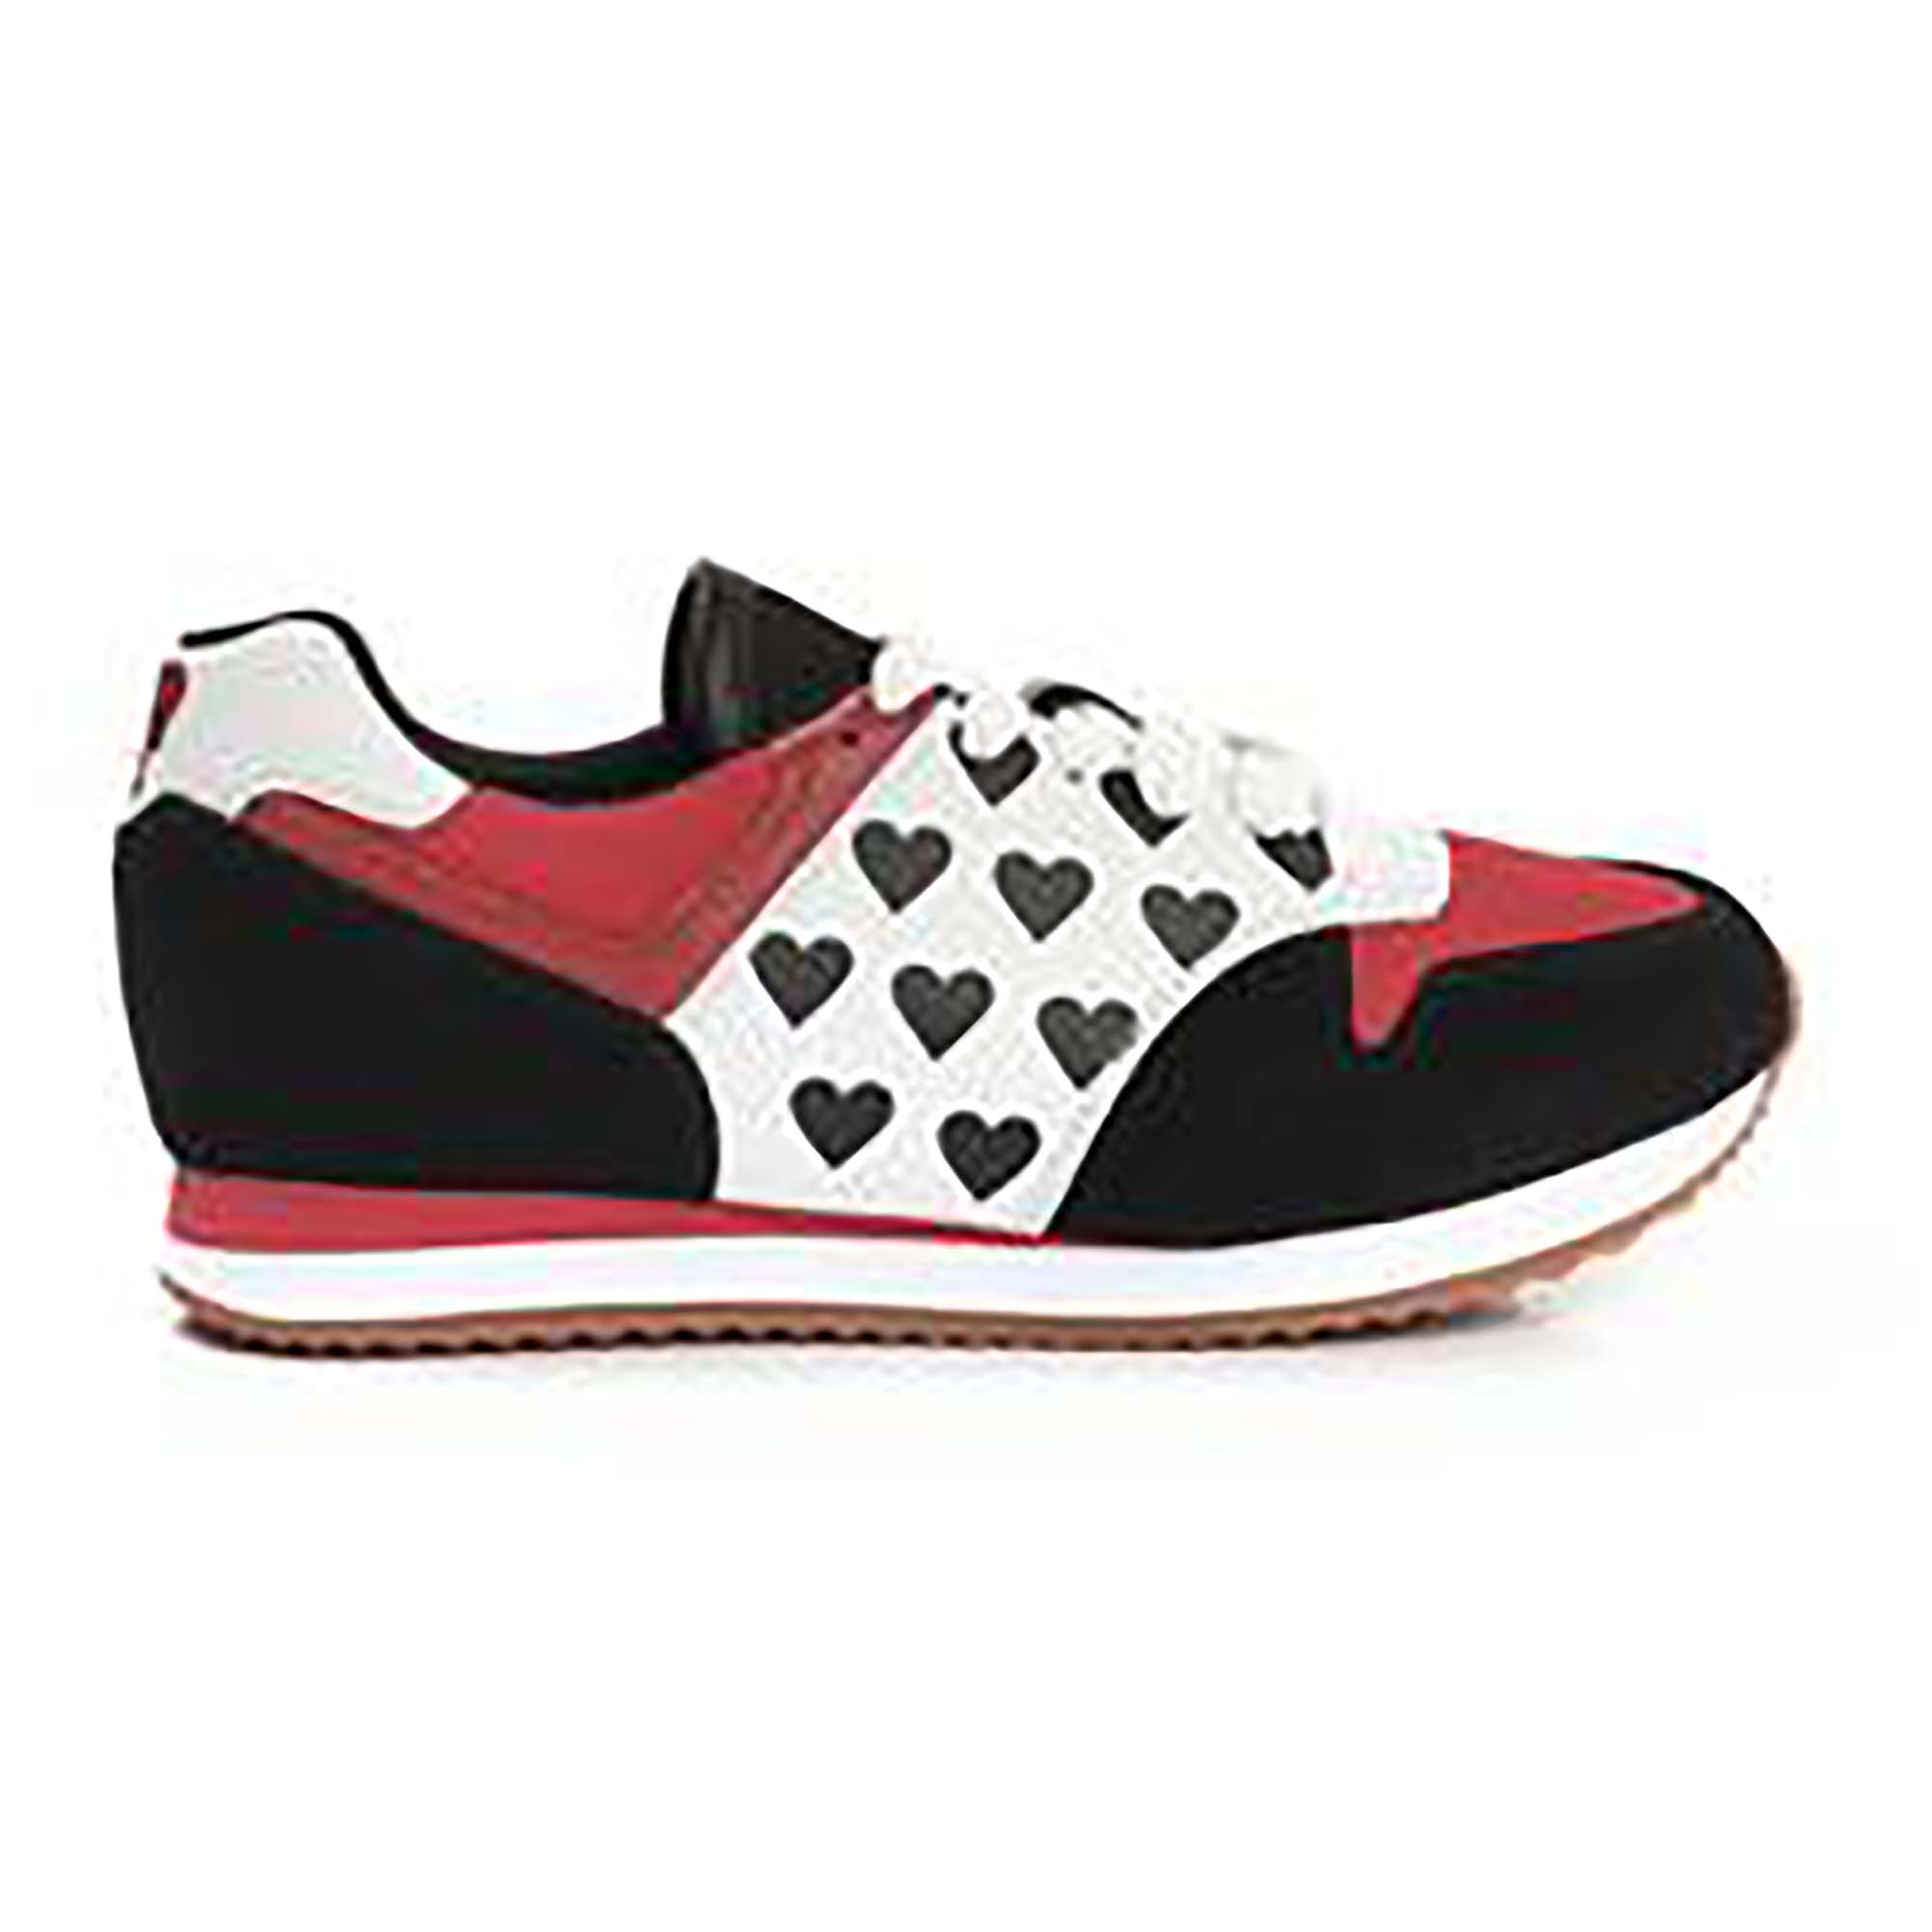 Lola Ramonalta lasten sneakerit, mustaa, punaista, valkoista ja sydämiä. Sivukuva 1.